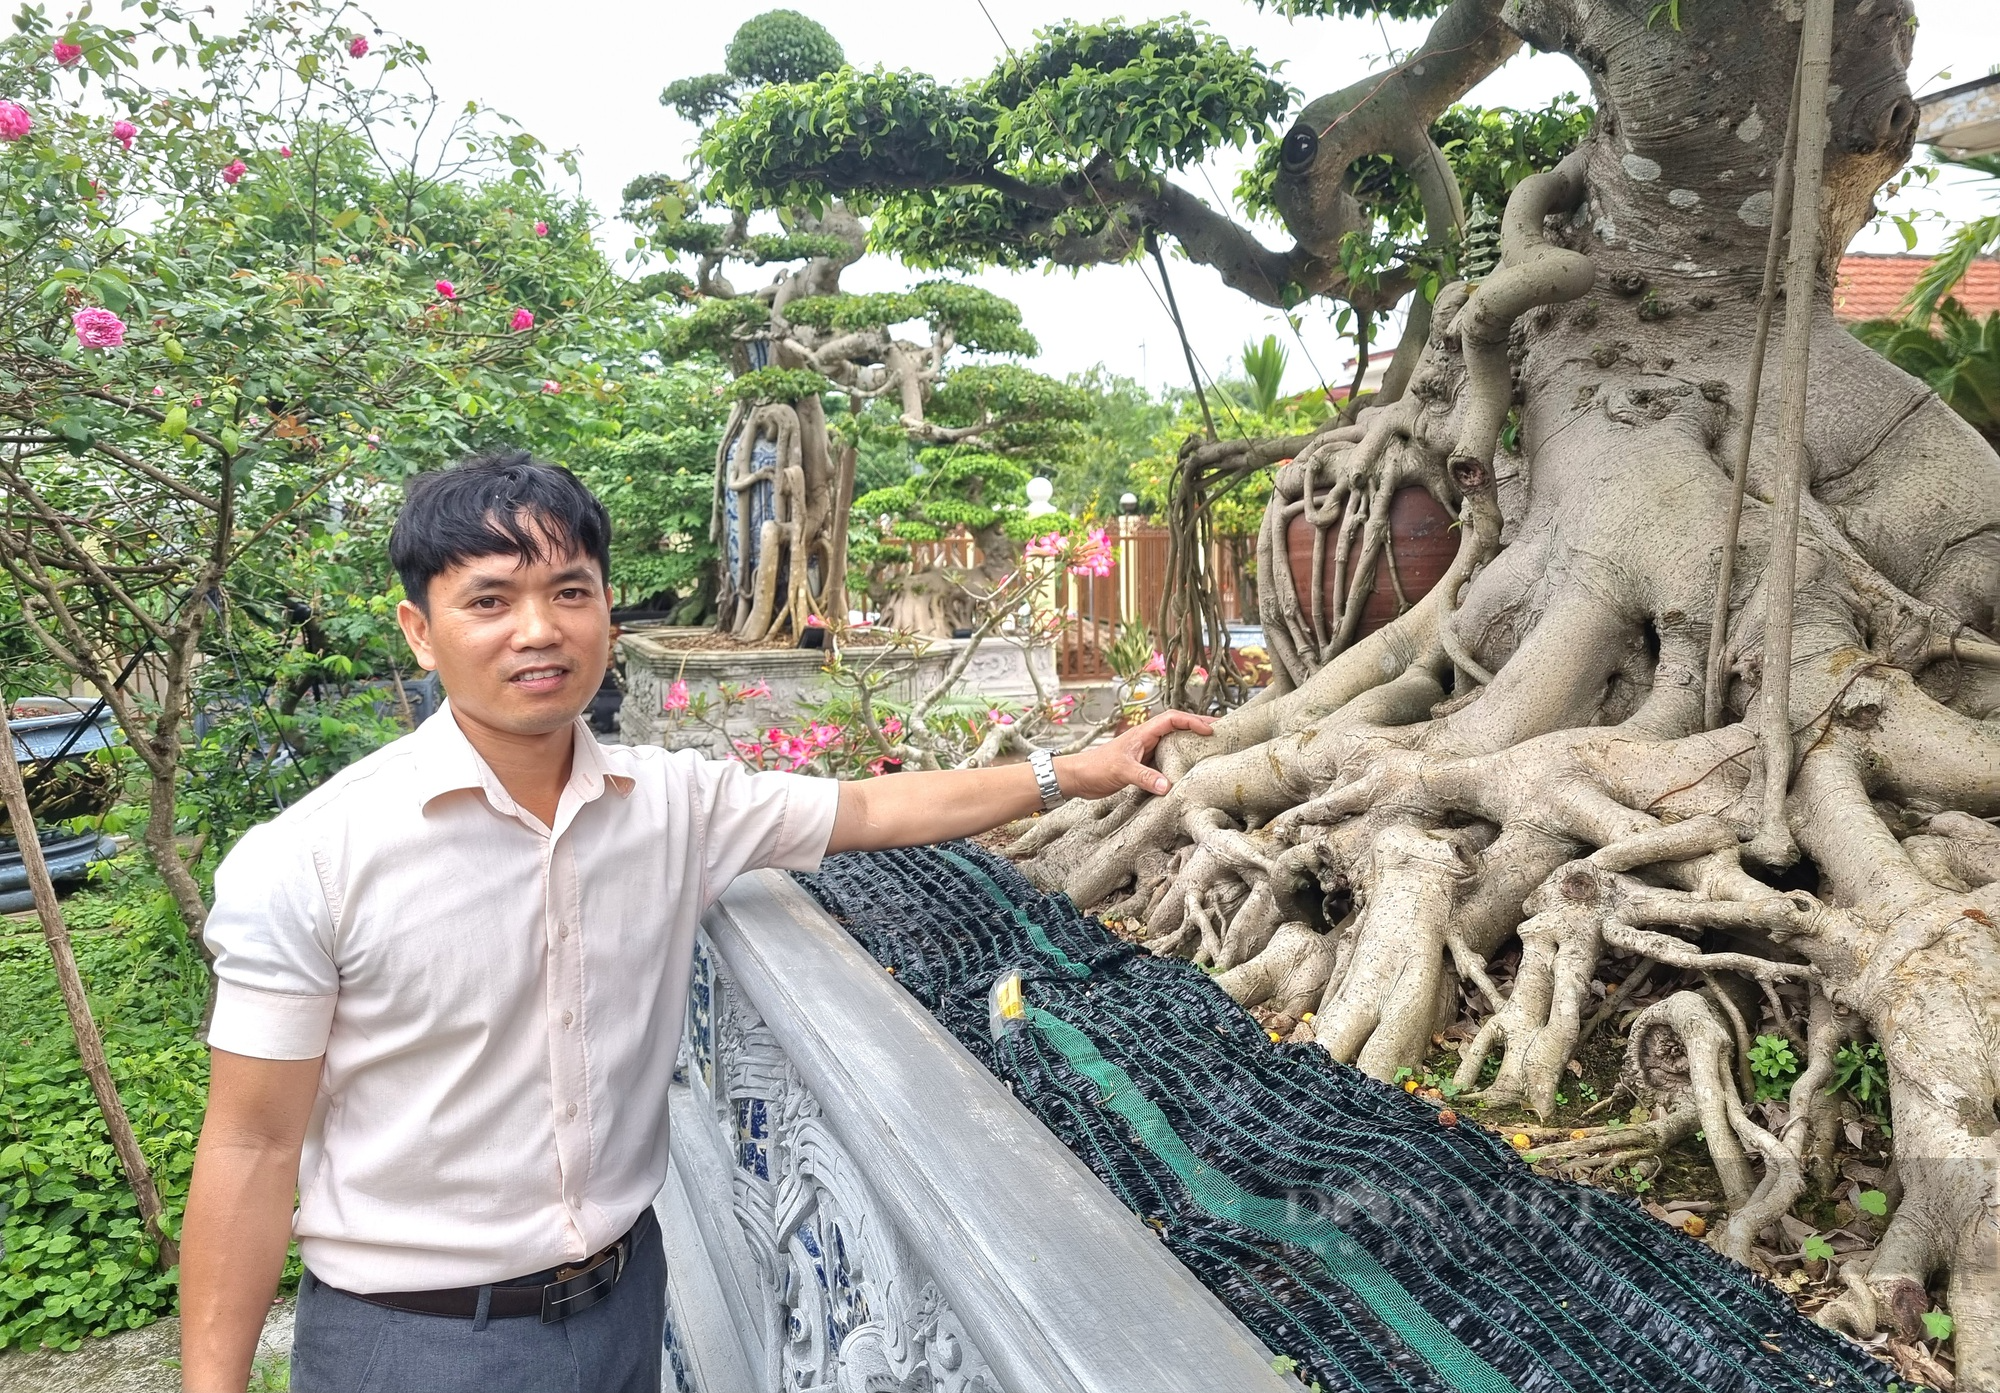 Cây sanh cổ hội tụ “cổ kỳ mỹ văn” giá gần 2 tỉ đồng ở Ninh Bình - Ảnh 10.